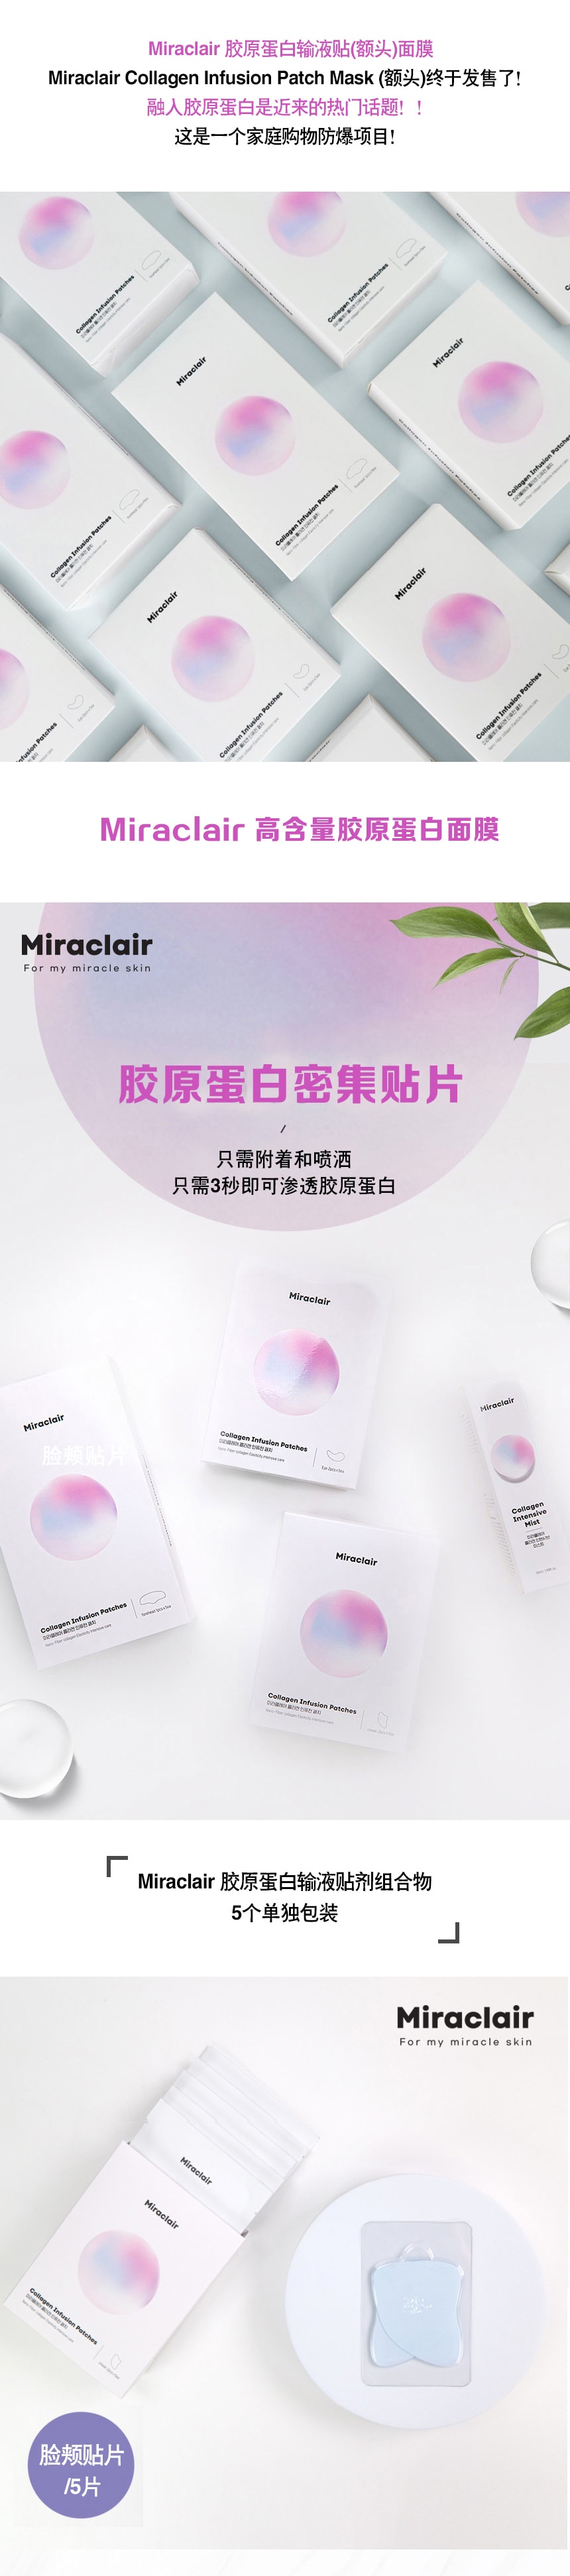 韓國 Miraclair 可融化吸收膠原蛋白臉部提升臉頰貼 5對/ 1 盒